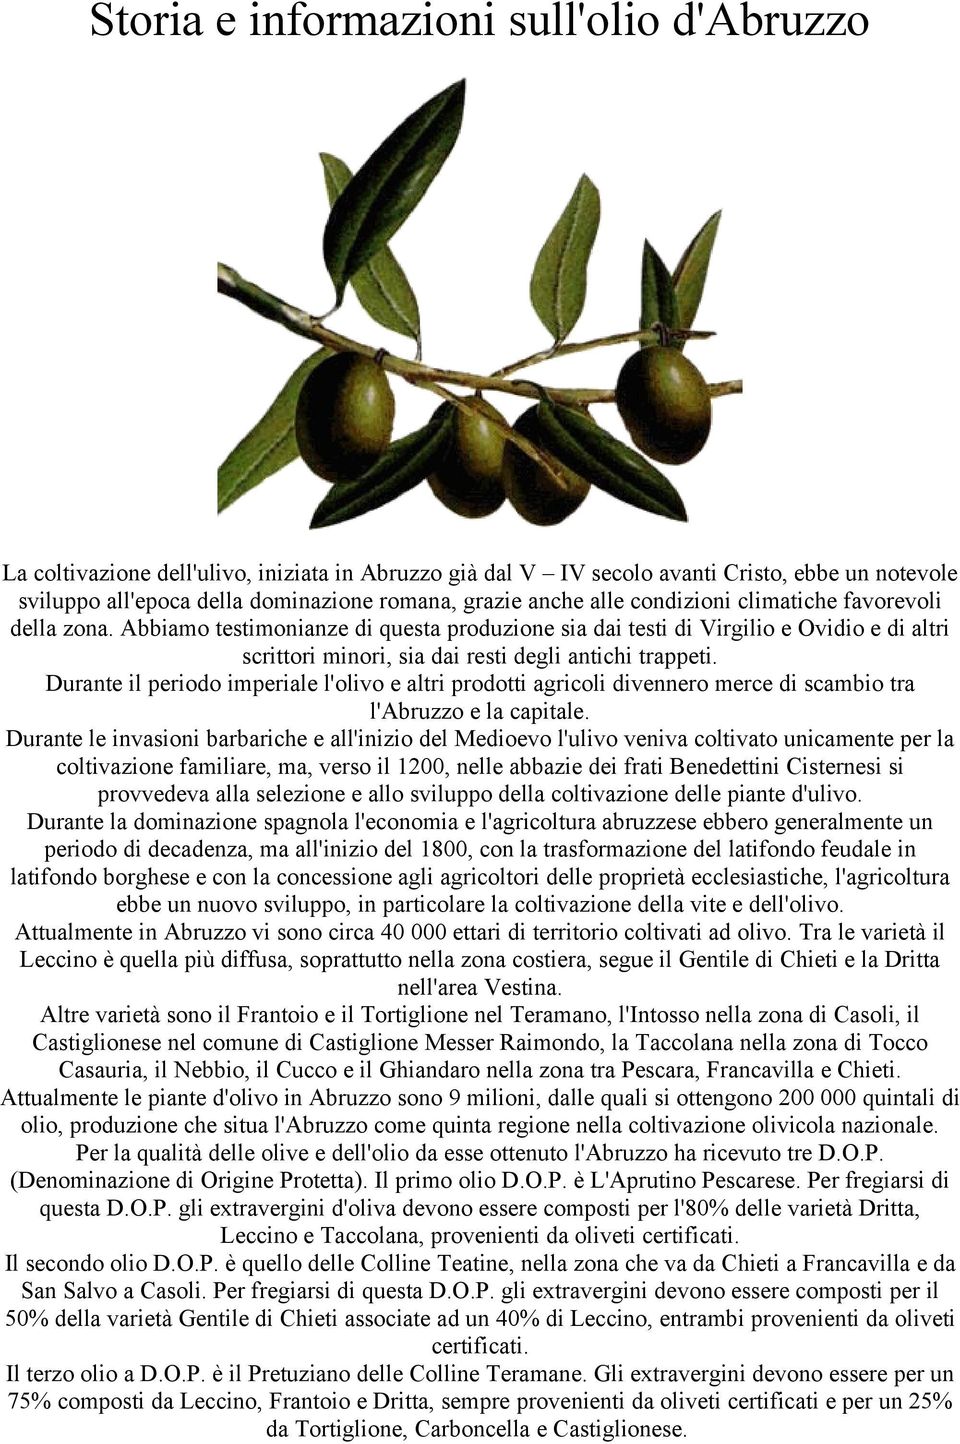 Durante il periodo imperiale l'olivo e altri prodotti agricoli divennero merce di scambio tra l'abruzzo e la capitale.